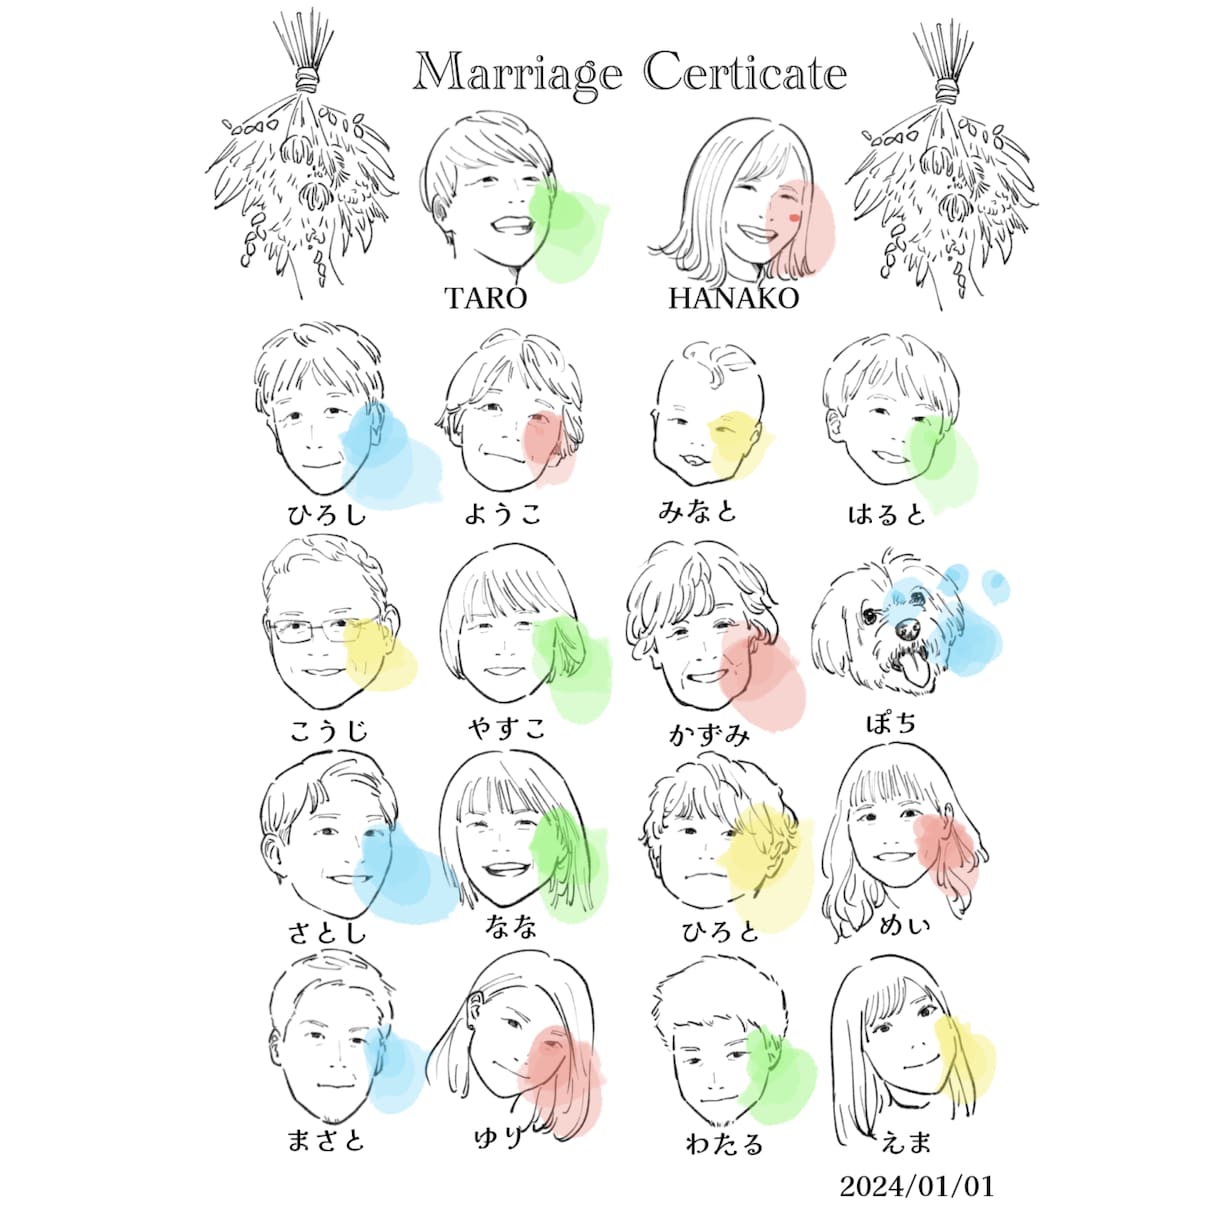 ゲスト参加型似顔絵結婚証明書描きます 人前式やウェルカムボードにも使えるおしゃれペーパーアイテム イメージ1